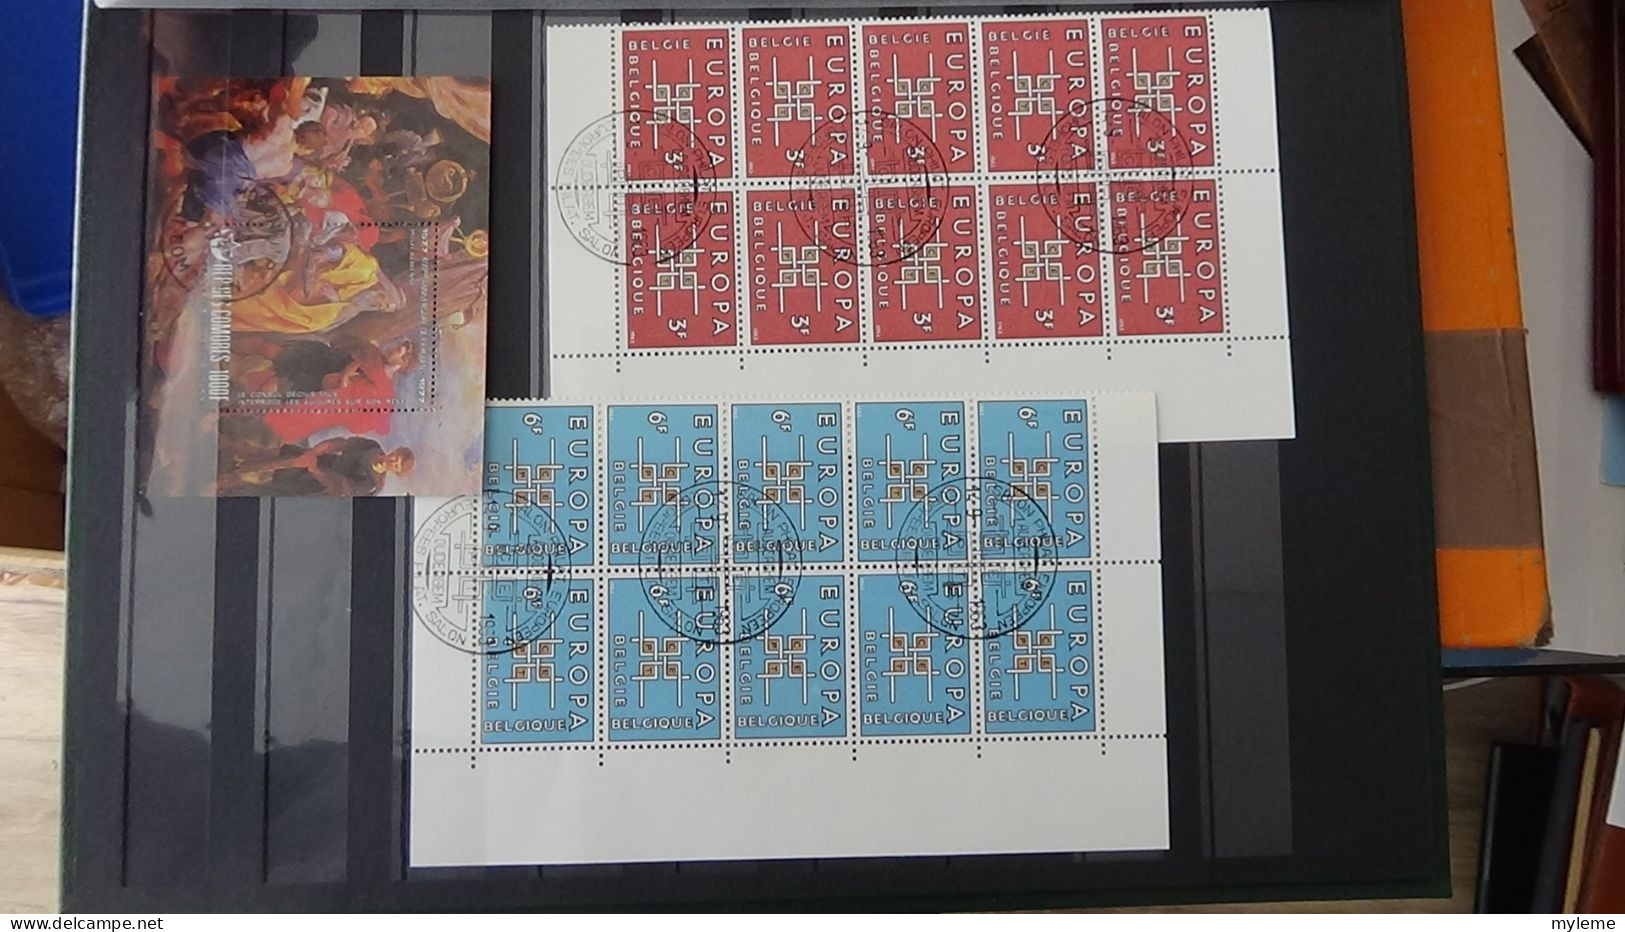 BF19 Ensemble de timbres et blocs oblitérés de divers pays + classiques de France ** avec petits défauts. Cote sympa !!!